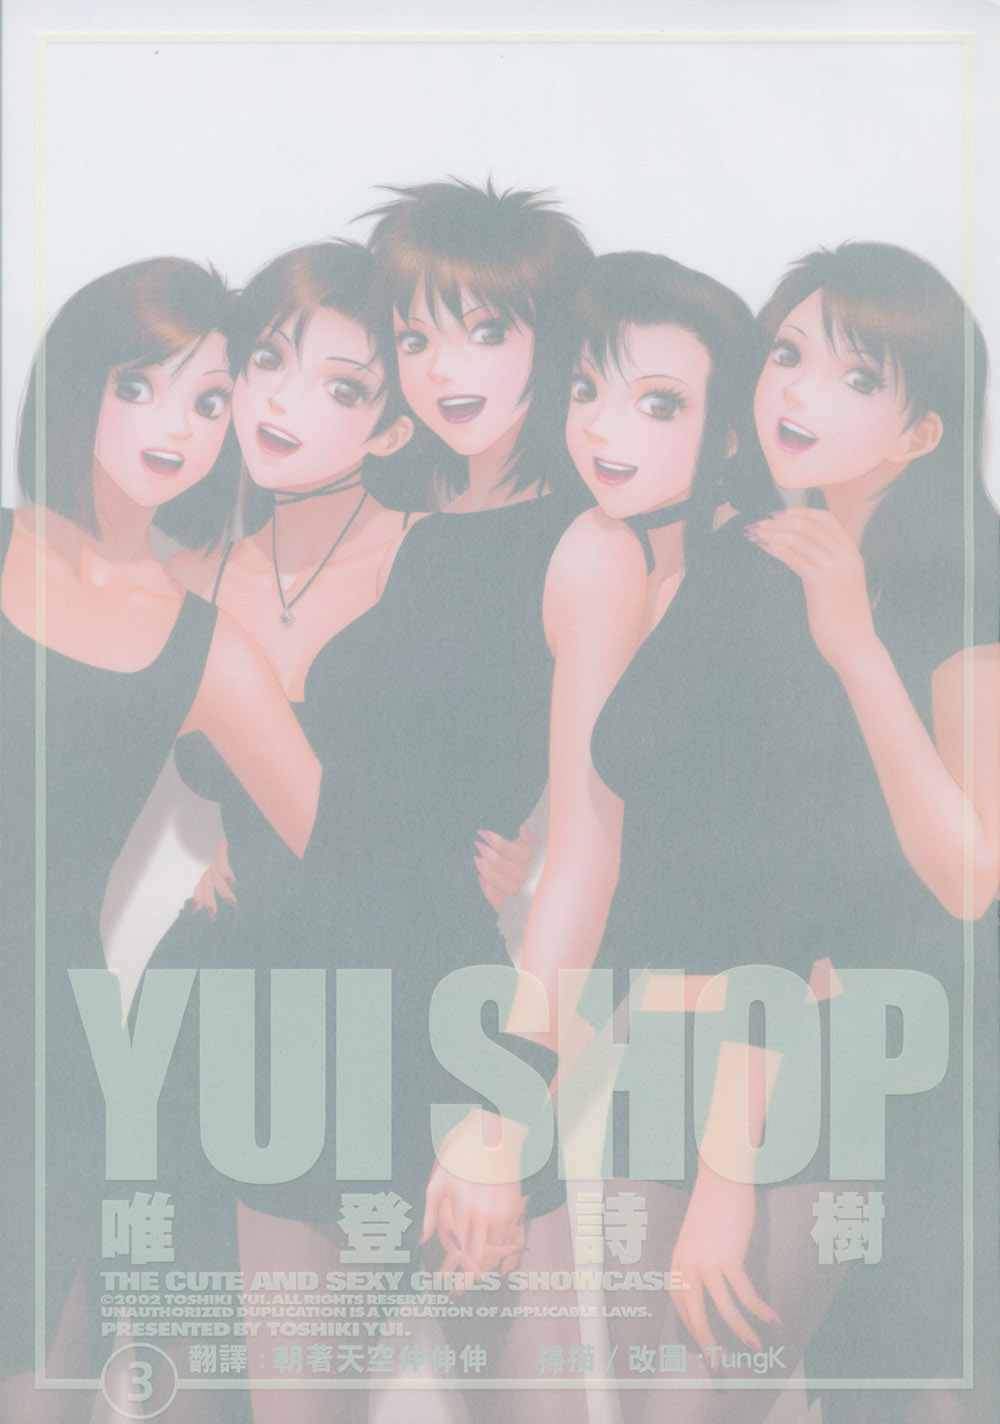 Yui shop 3 